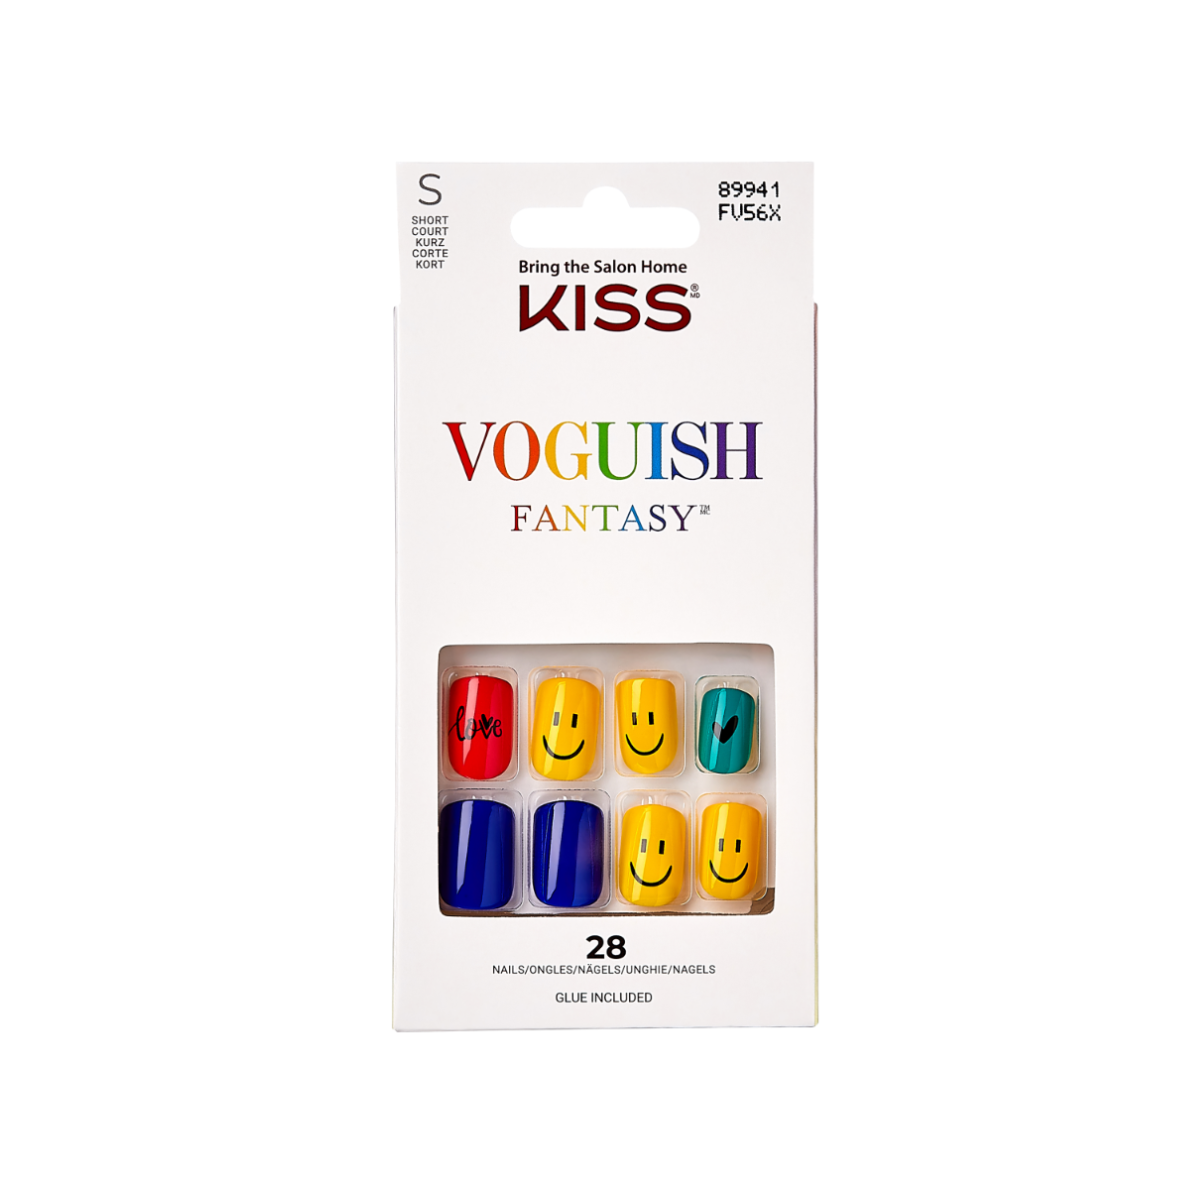 VOGUISH FANTASY EGO - OUTLET KISS